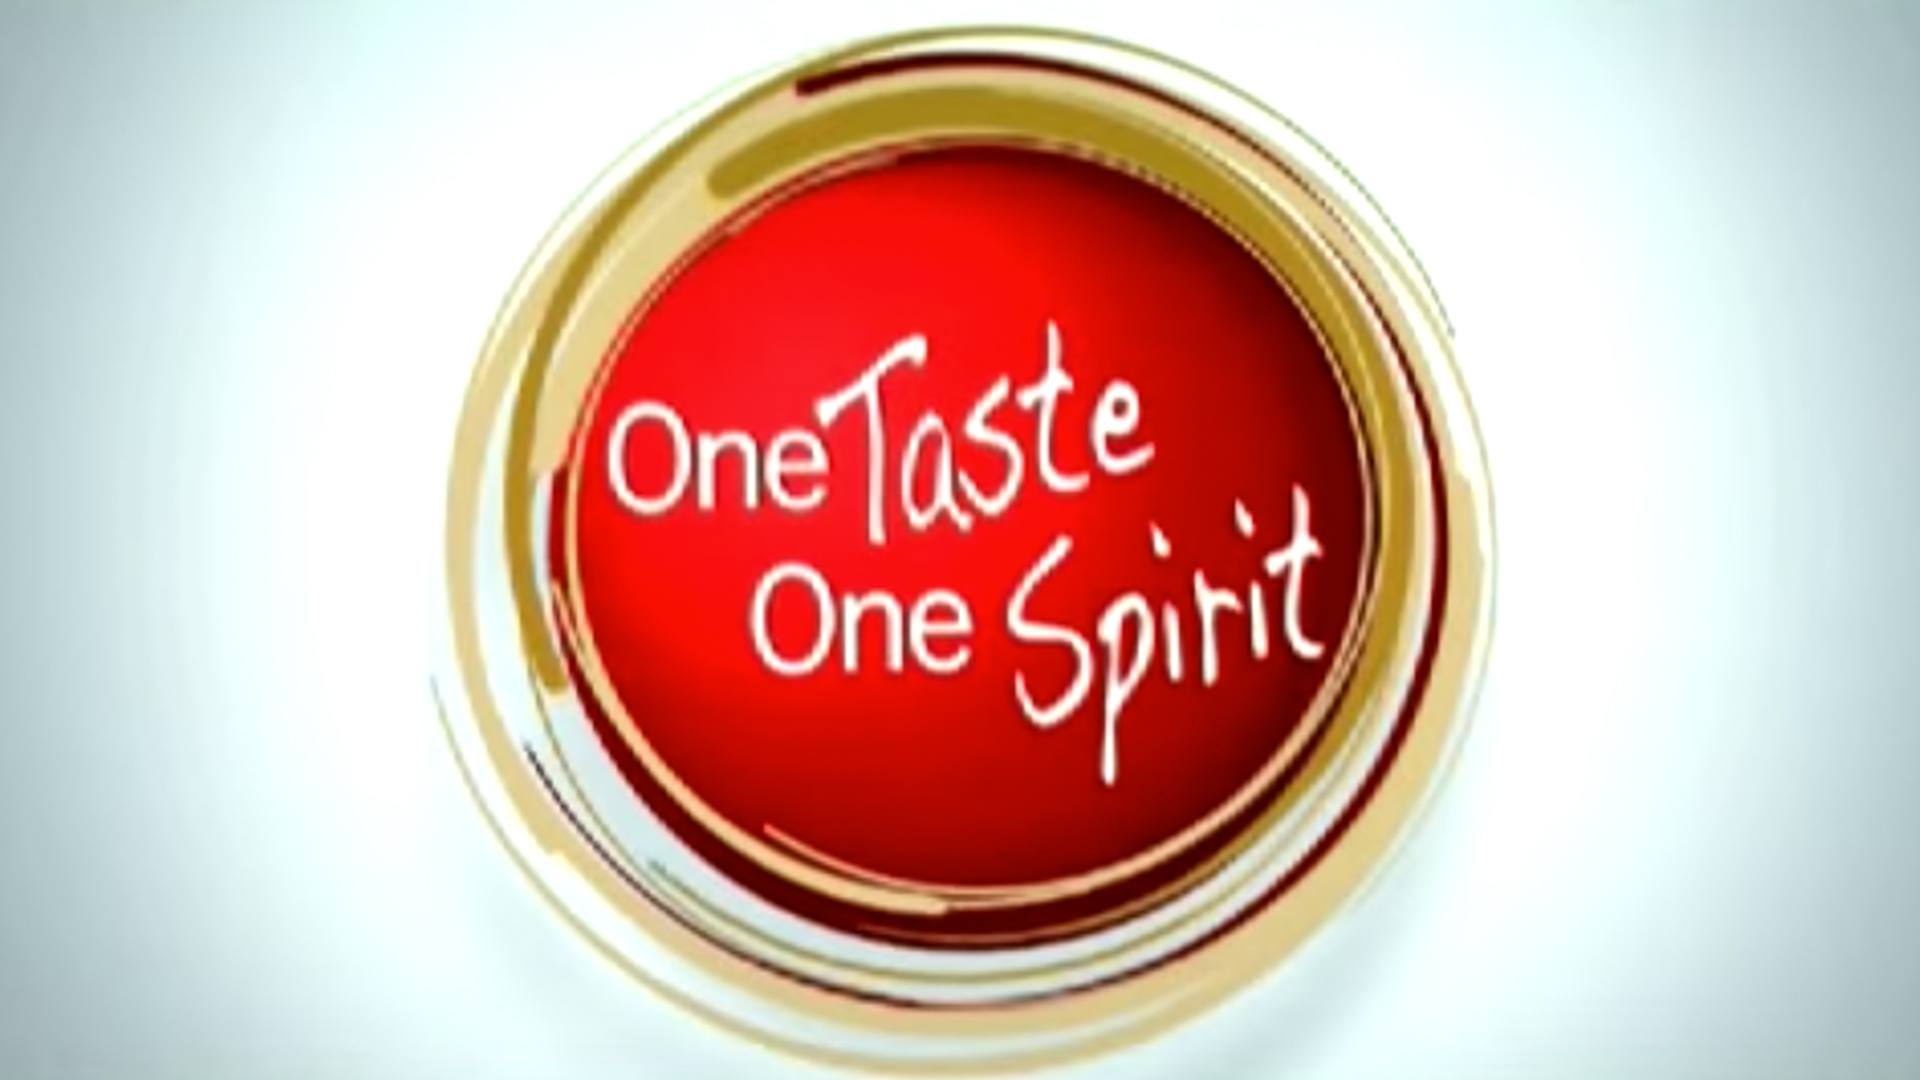 Uno Mild – One taste One Spirit